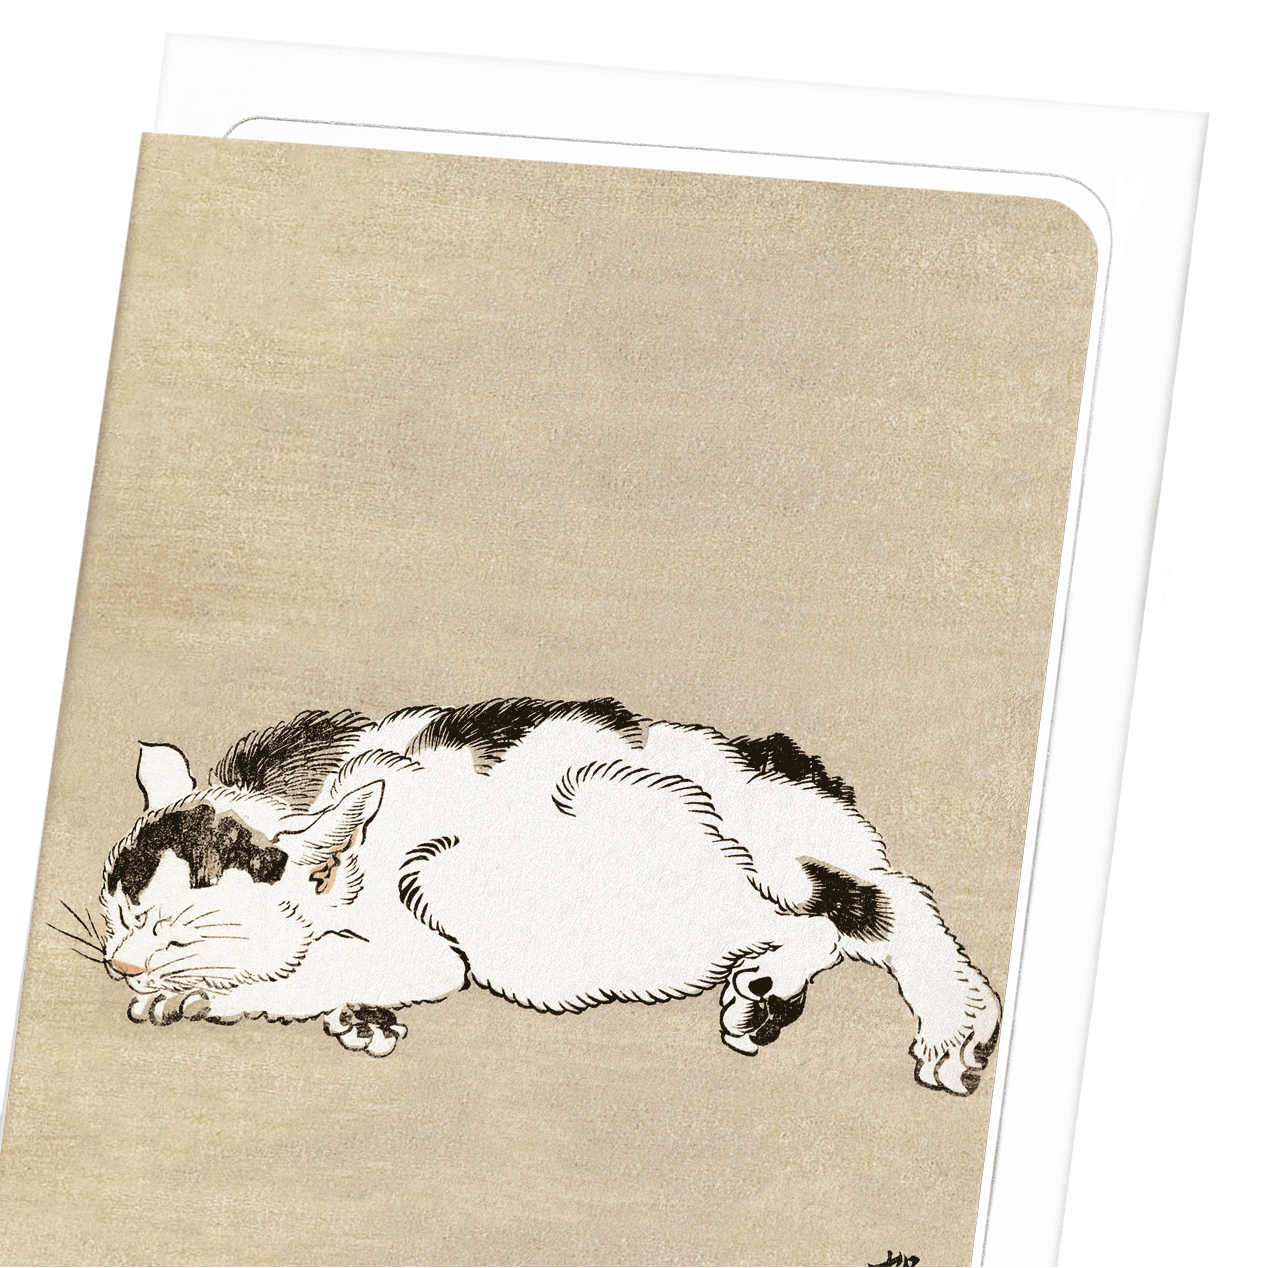 SLEEPING CAT (1887)